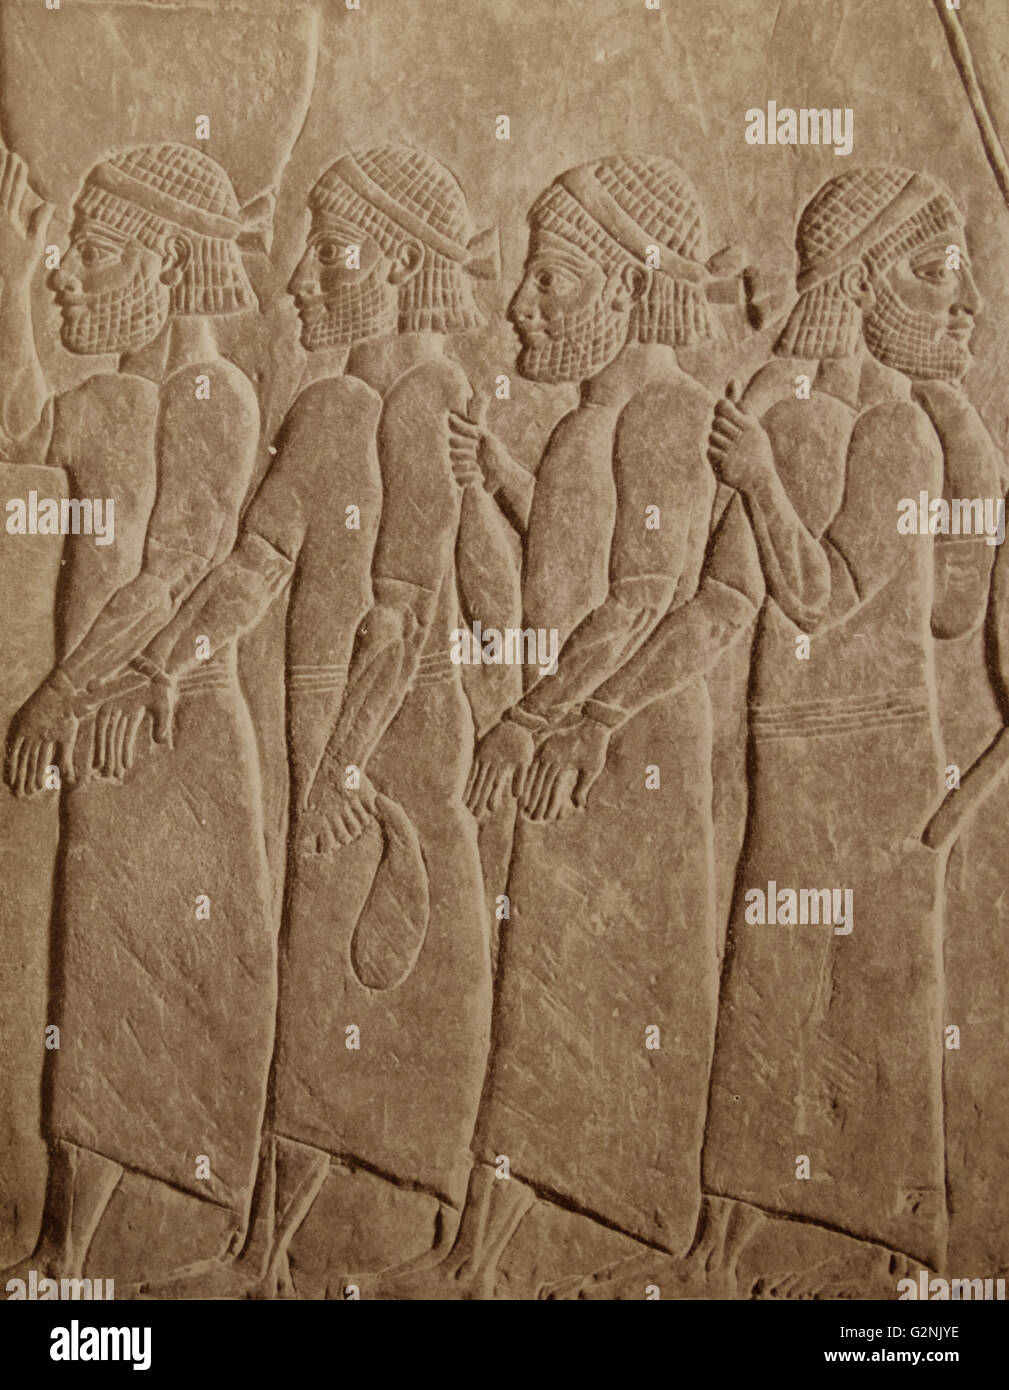 Los prisioneros de guerra, atados en parejas. A partir de un relieve asirio. Foto de stock